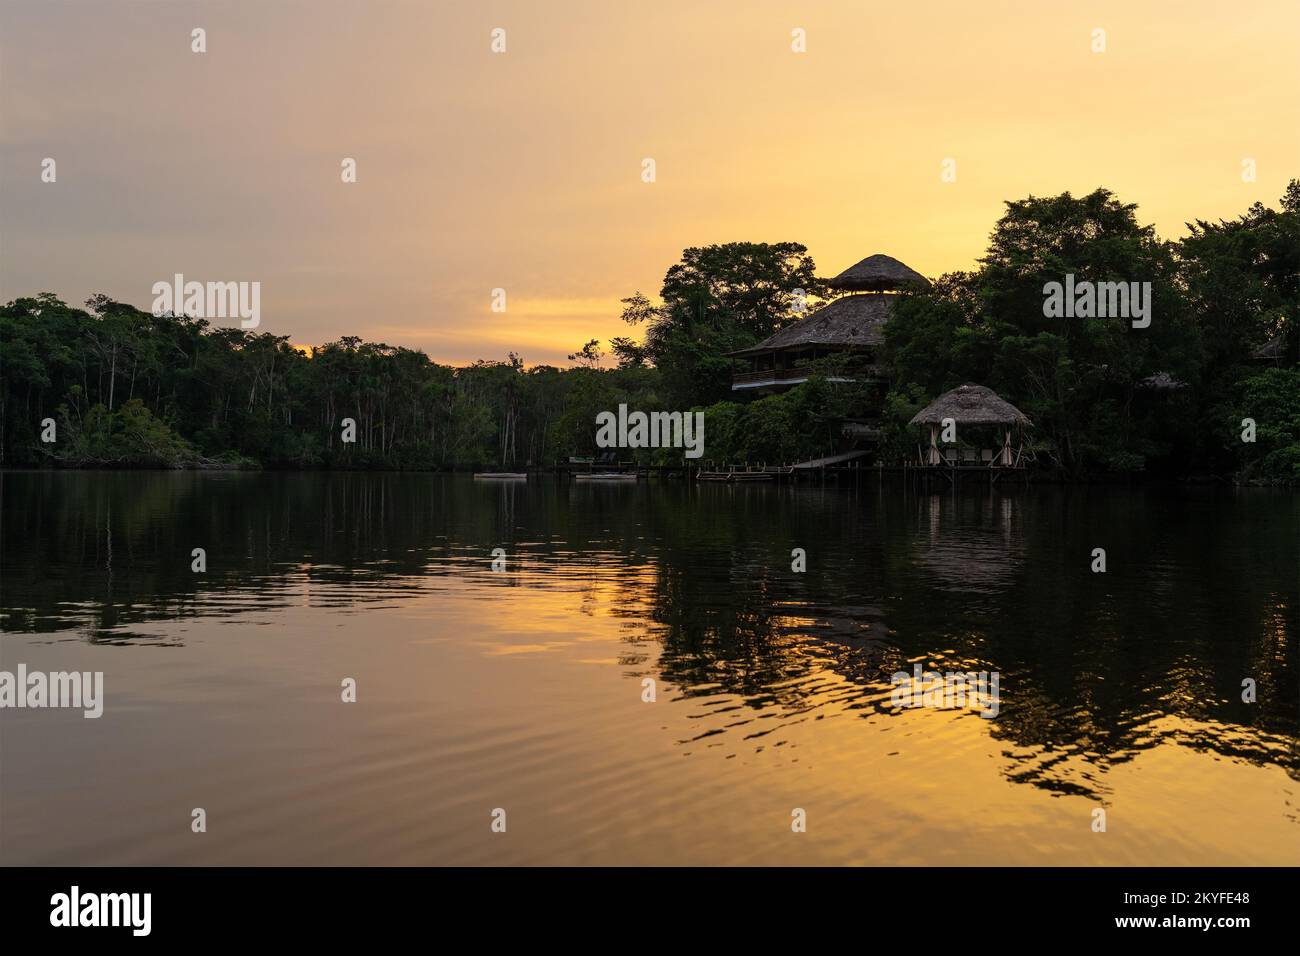 Amazon rainforest reflection at sunset, Yasuni national park, Ecuador. Stock Photo